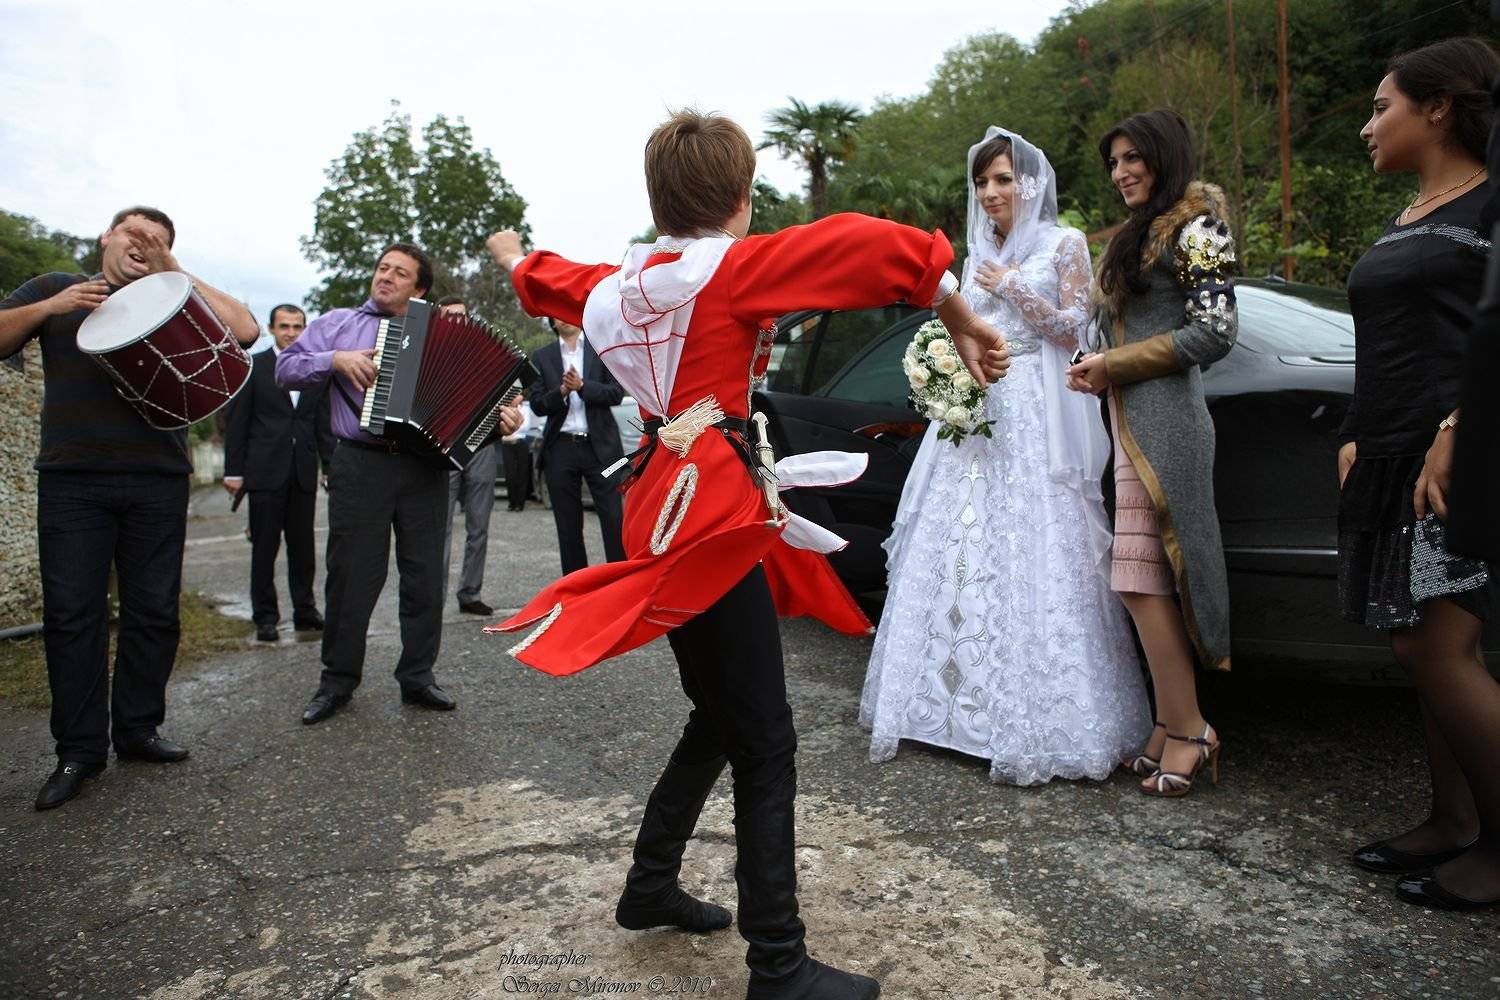 Грузинская свадьба: уникальные традиции и интересные факты